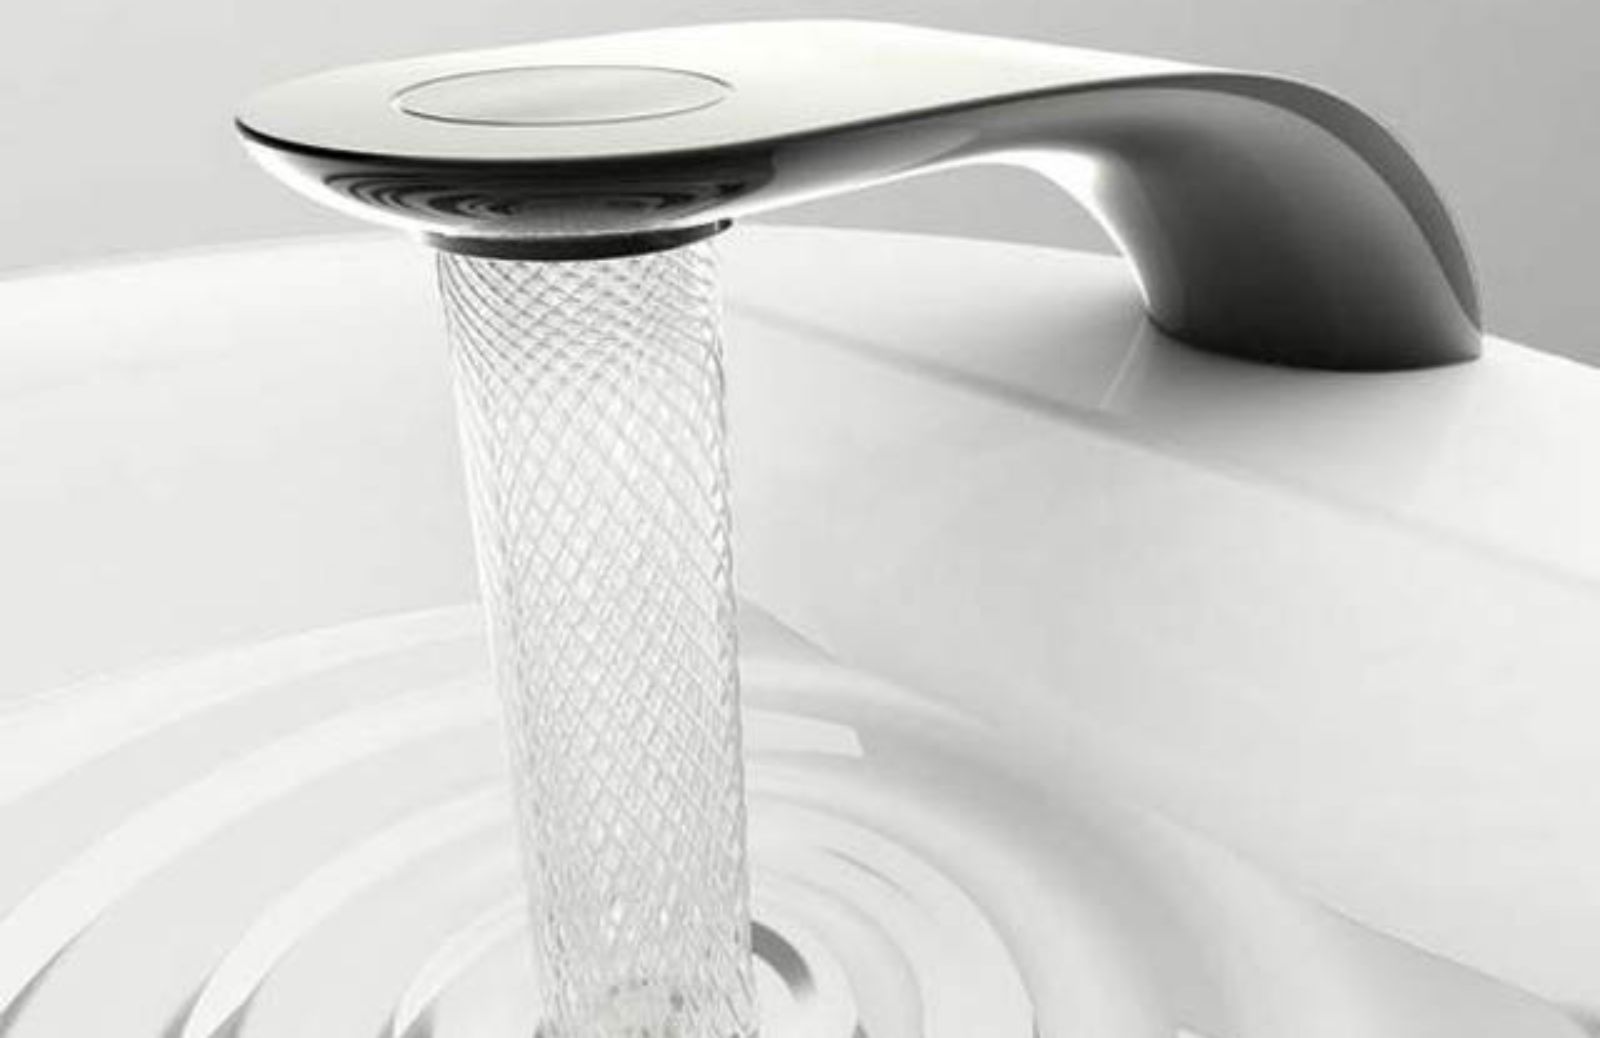 Come risparmiare acqua con Swirl, il rubinetto ecologico